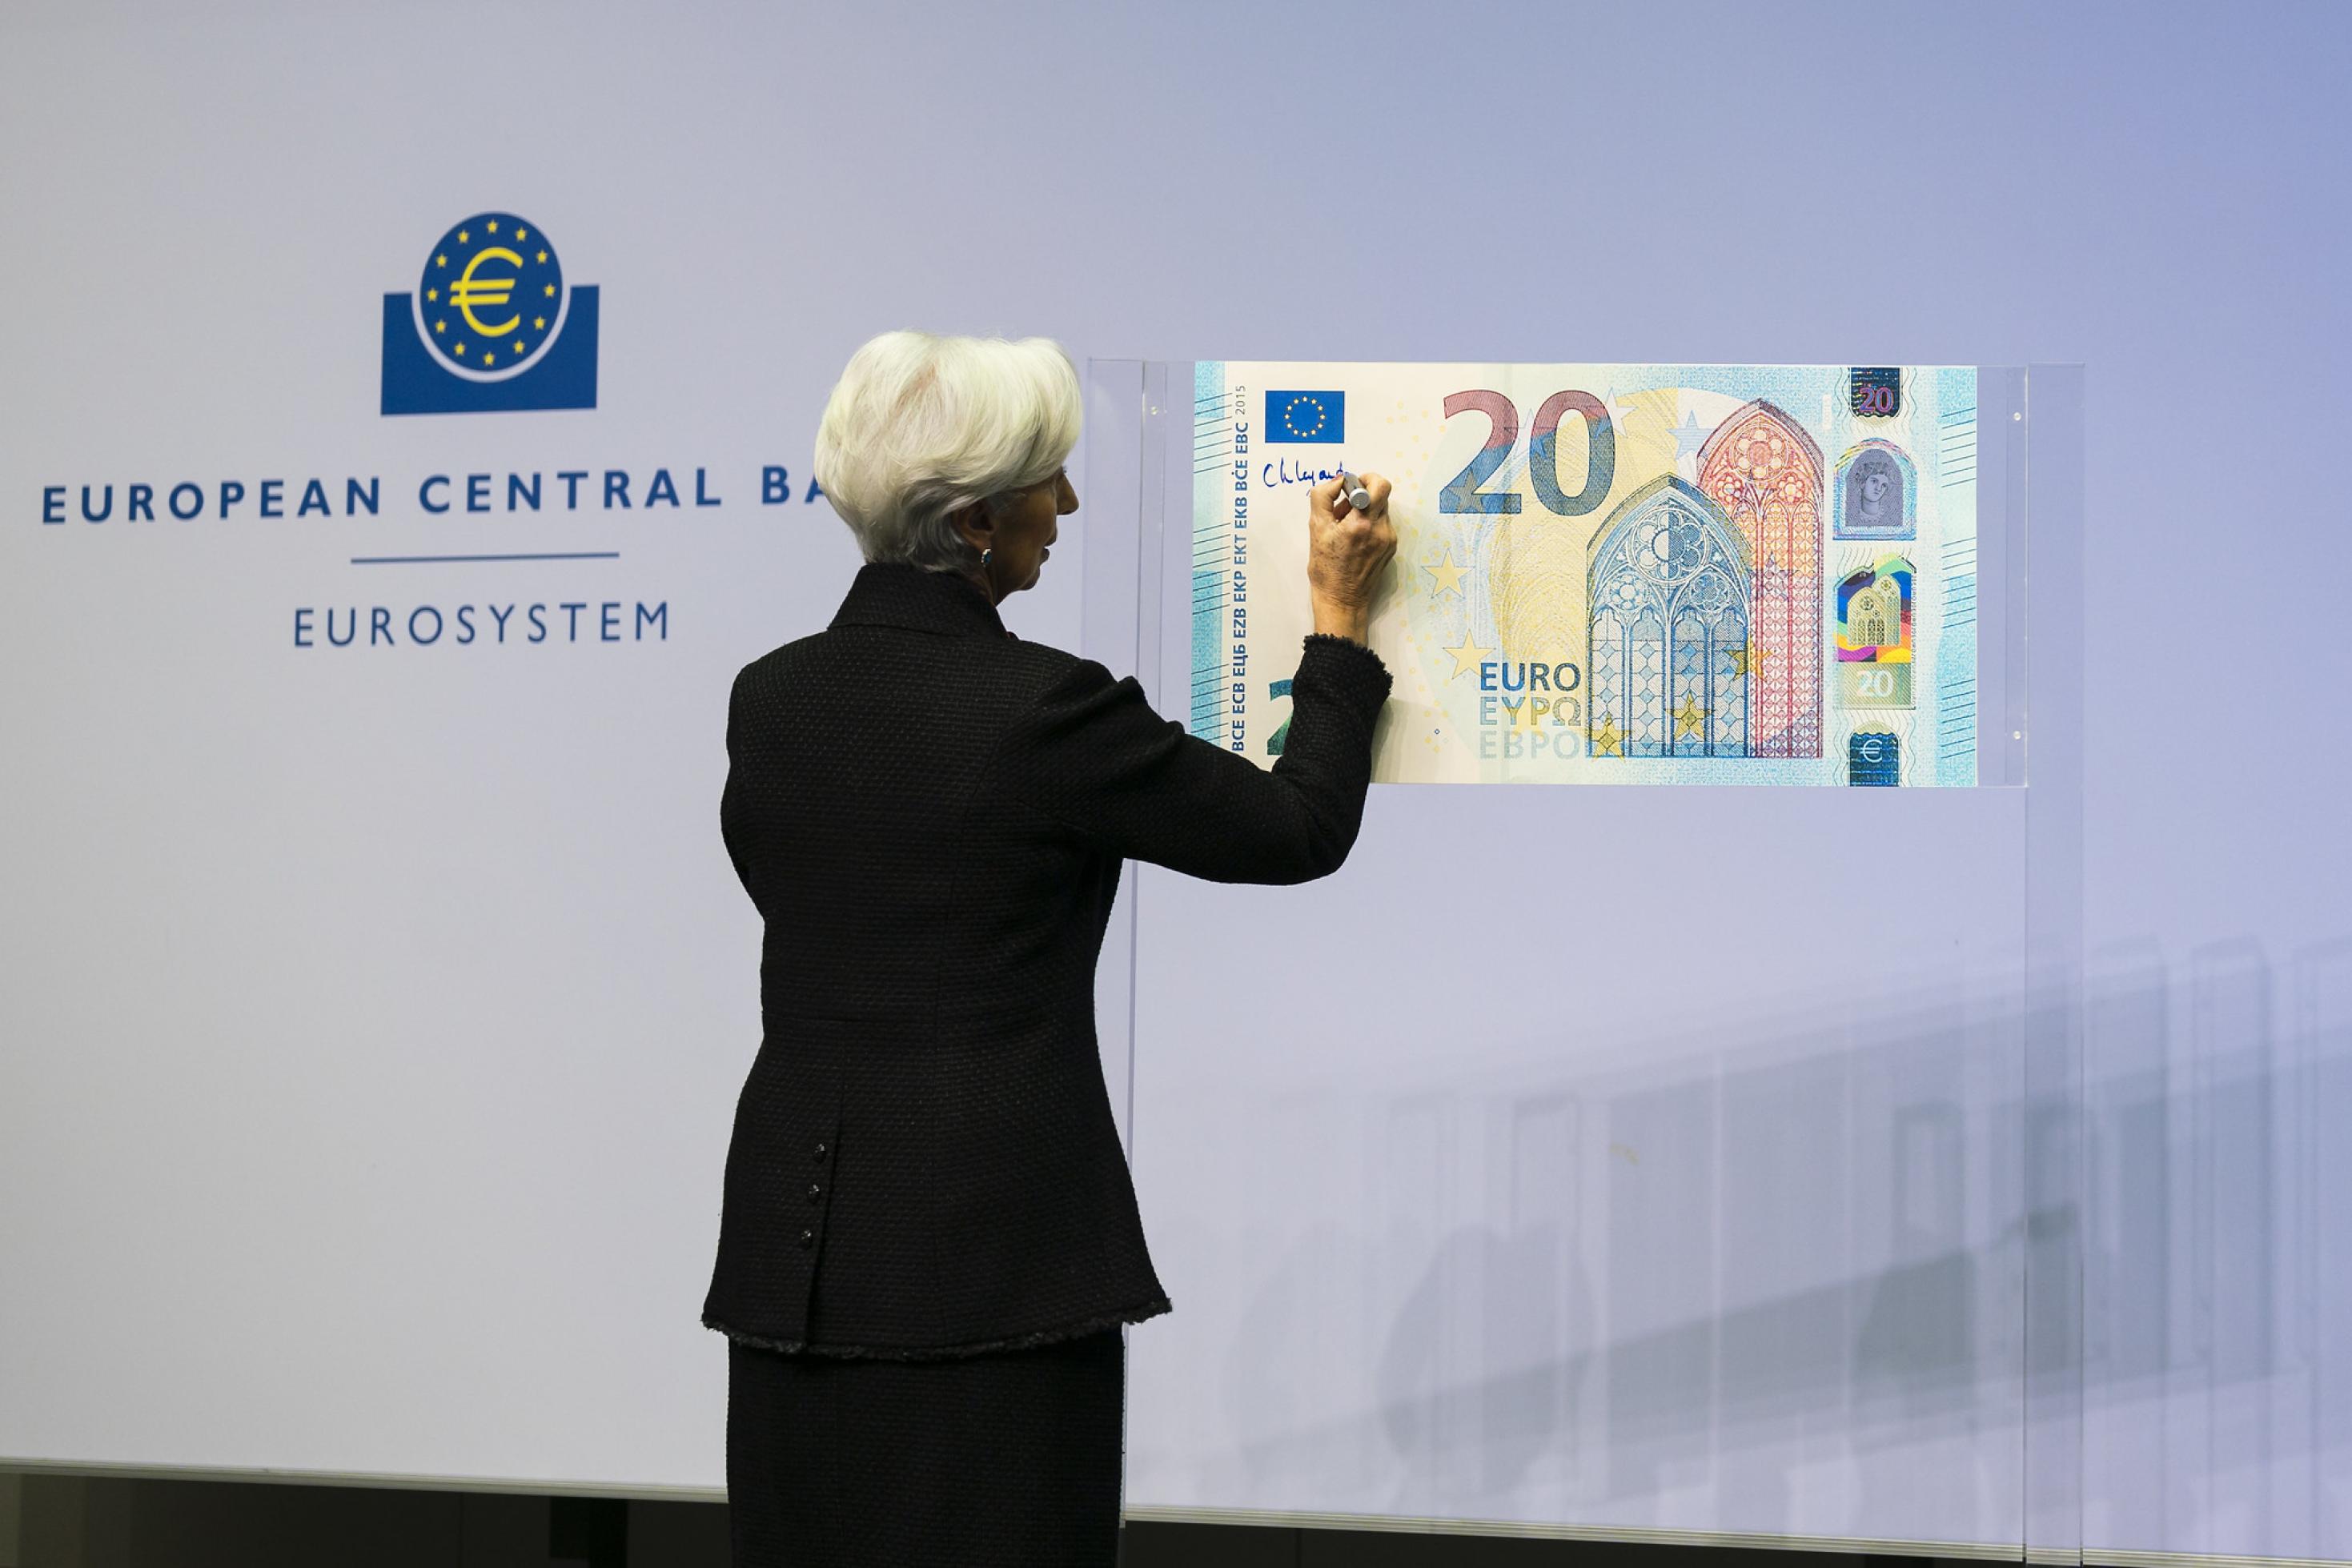 Lagarde, eine Frau mit weißem Haar, unterschreibt mit dickem Stift eine große, an die Wand gehängte Banknote.